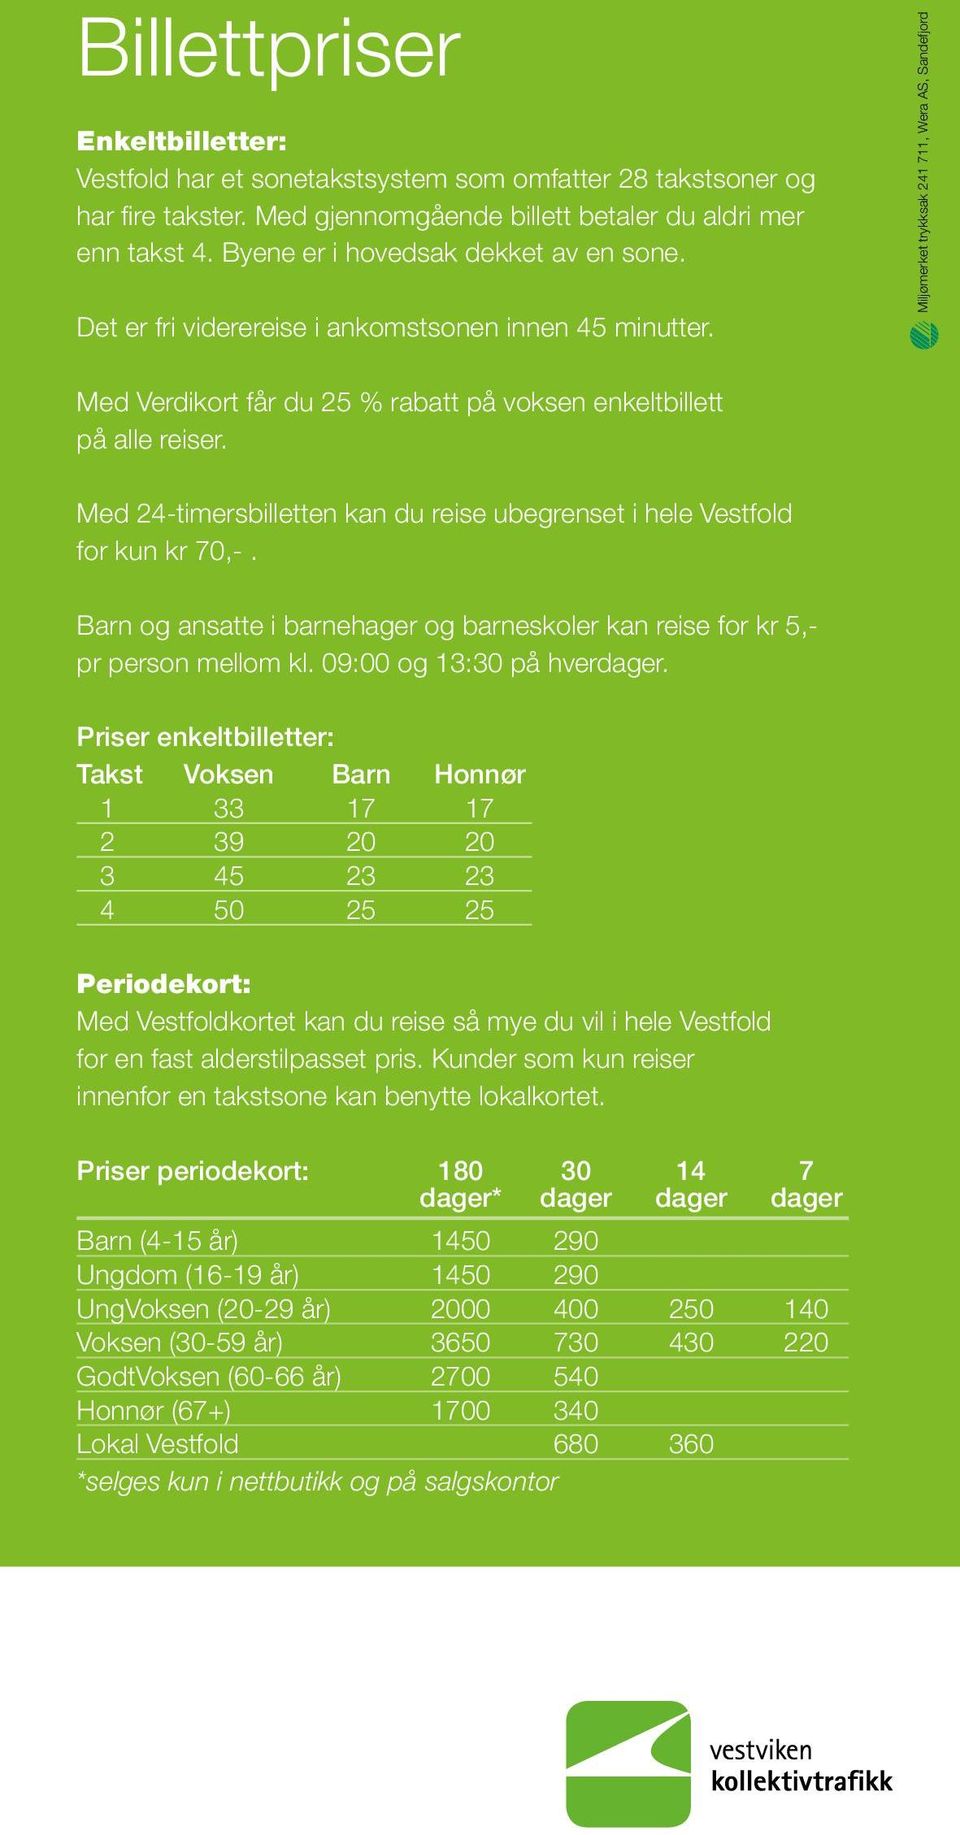 Miljømerket trykksak 241 711, Wera AS, Sandefjord Med Verdikort får du 25 % rabatt på voksen enkeltbillett på alle reiser.